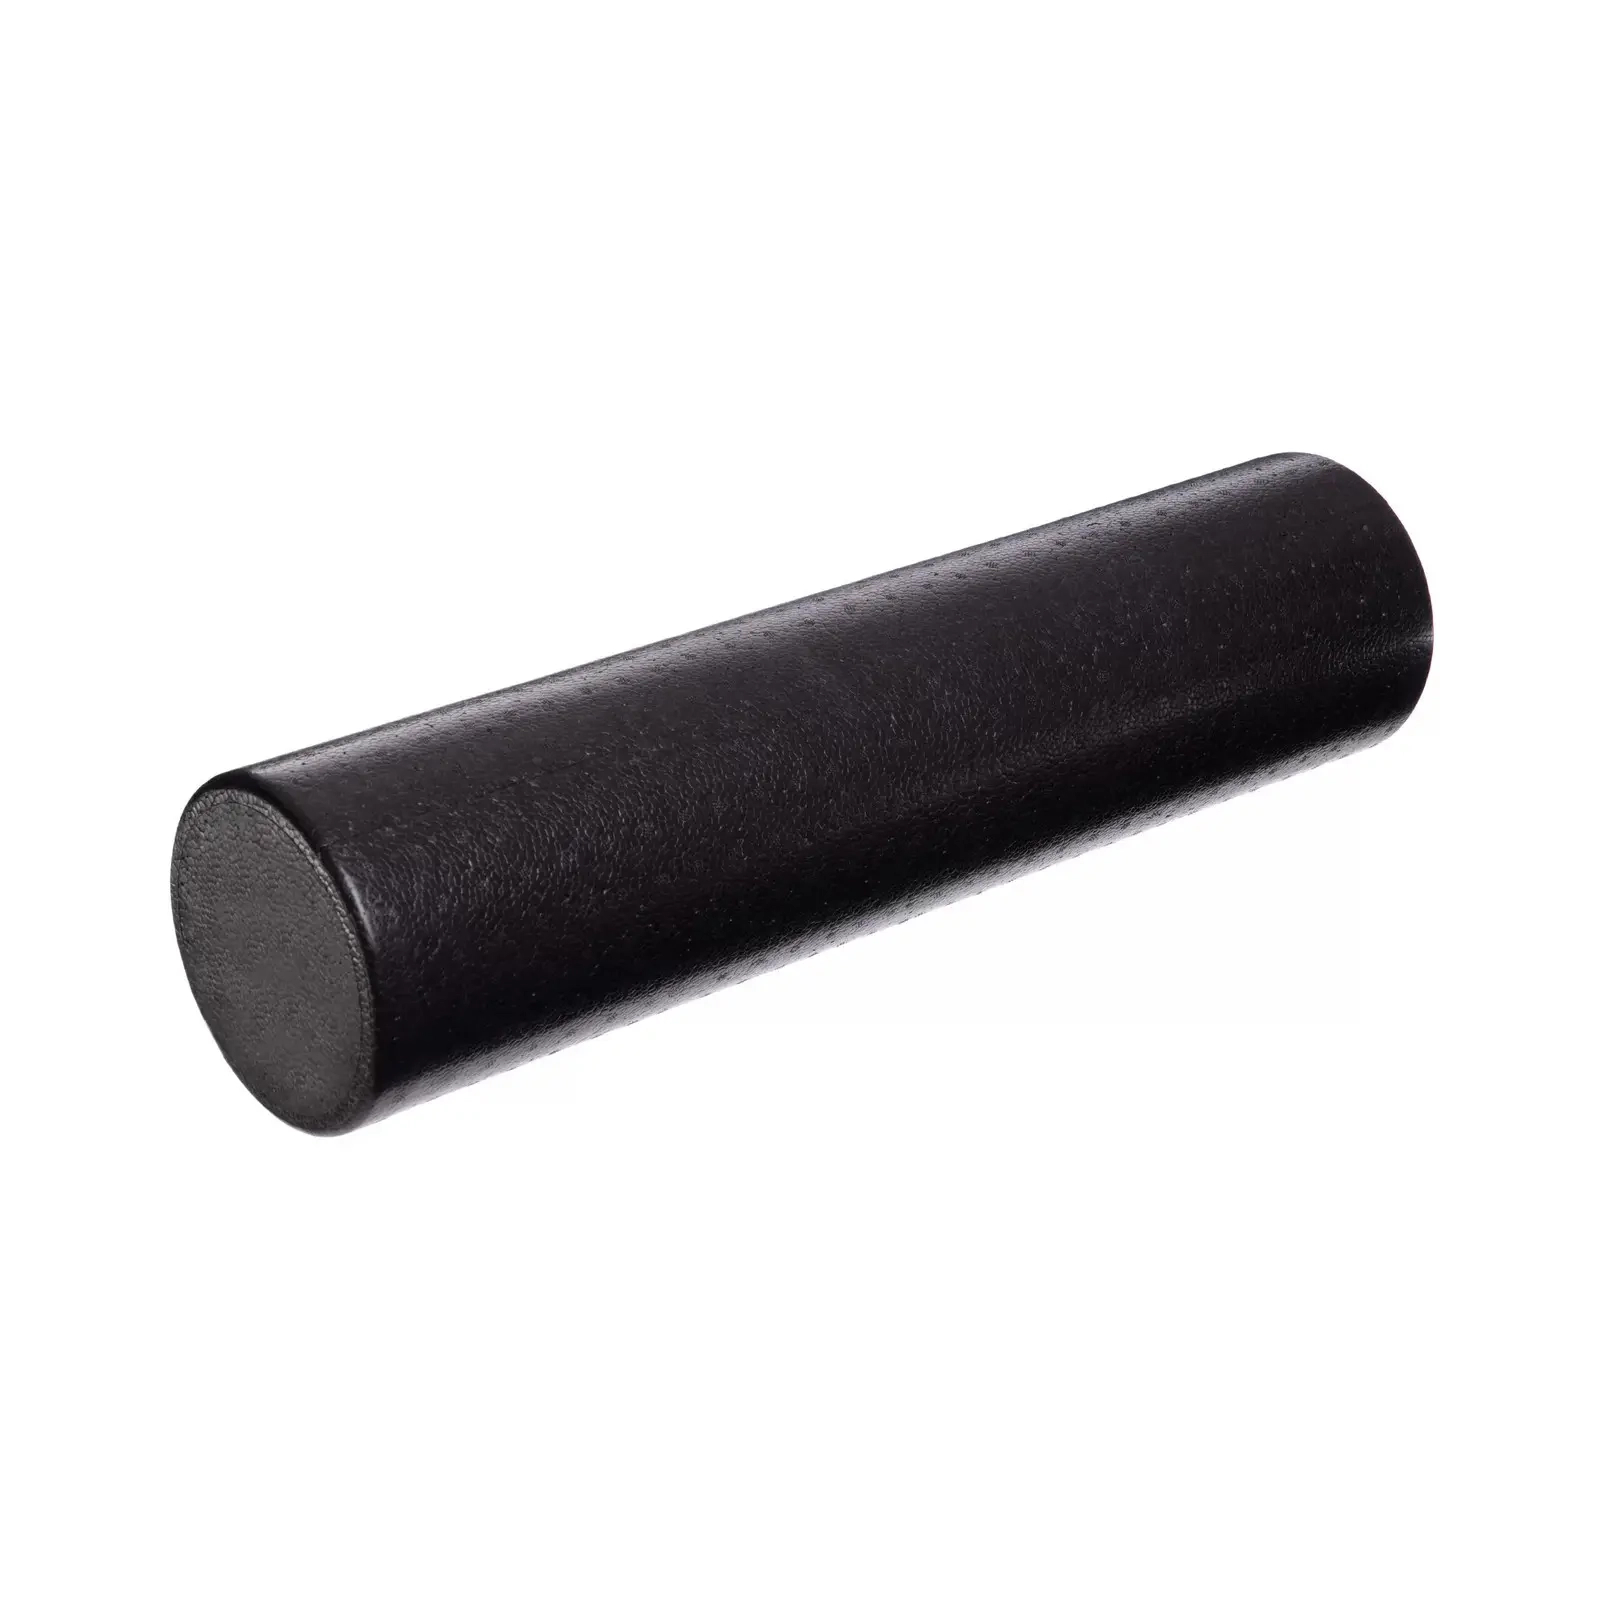 Масажный ролик U-Powex гладкий UP_1008 EPP foam roller 45х15cm (UP_1008_epp_(45cm))